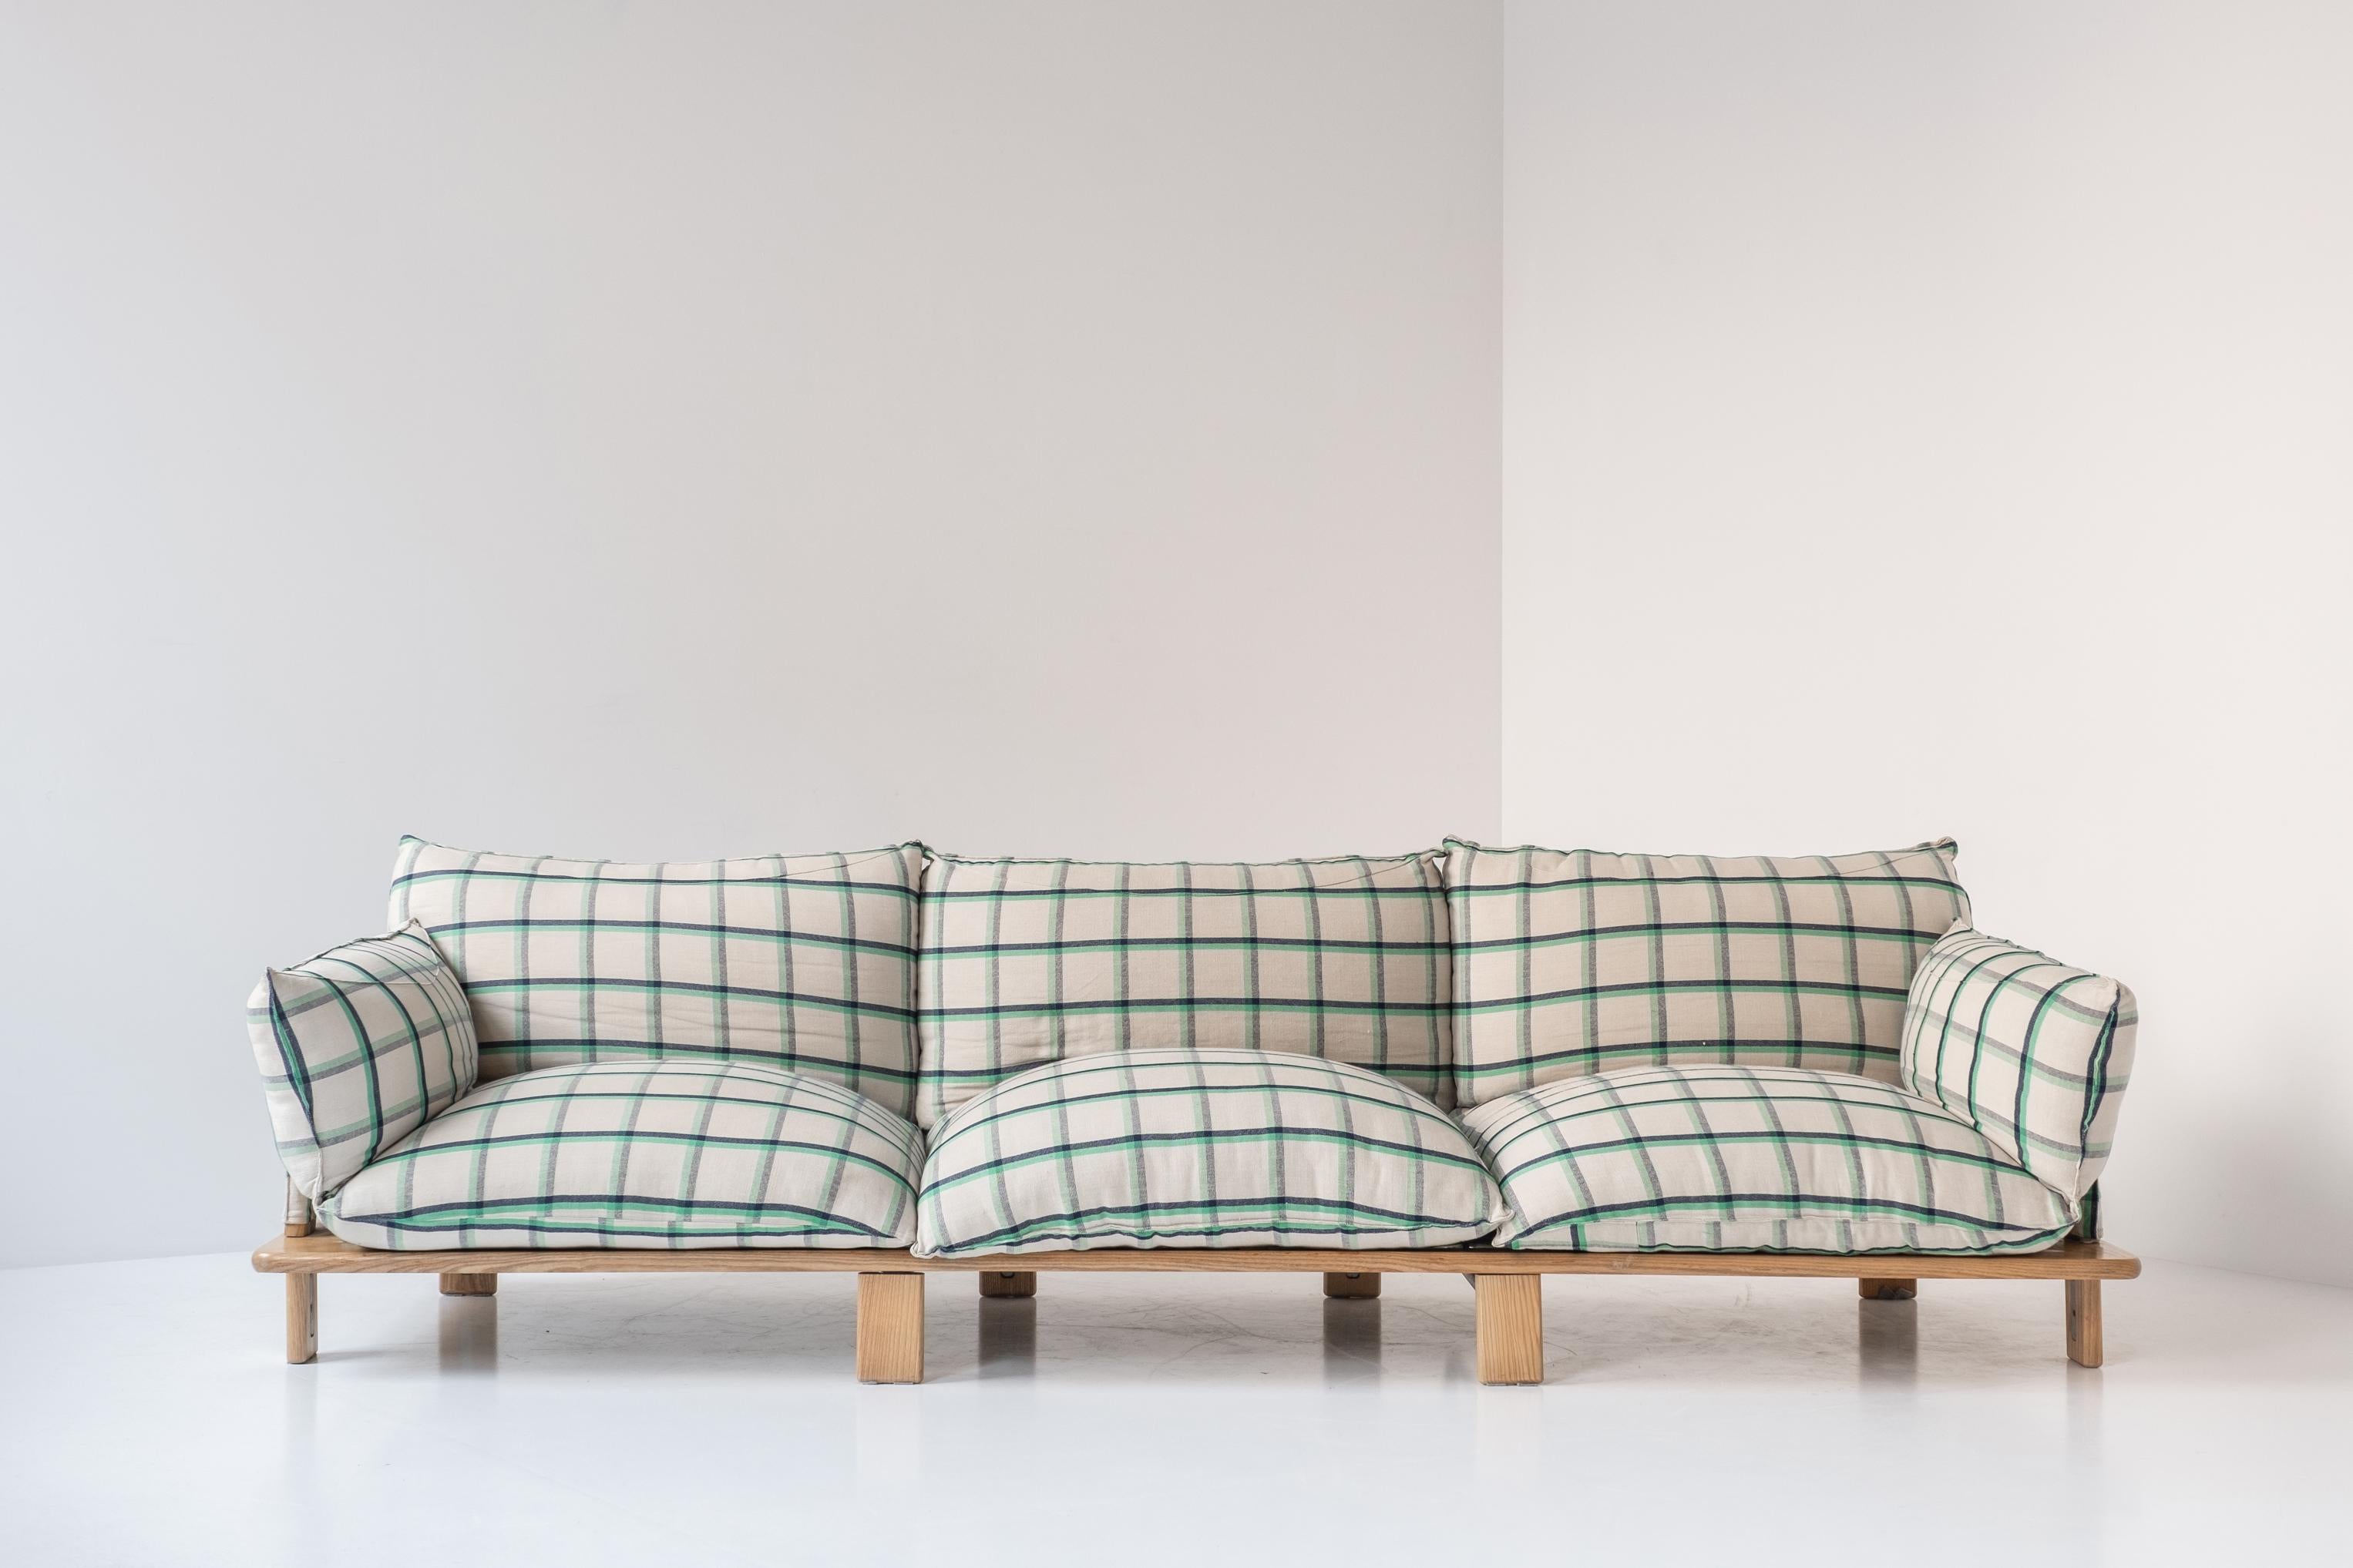 Sehr seltenes dreisitziges Sofa von Giovanni Offredi für Saportiti, Italien 1970er Jahre. Dieses Sofa hat ein Gestell aus Eschenholz und ist noch mit dem originalen Baumwollstoff gepolstert. Äußerst bequemes Sofa in einer schönen Polsterung. Einige